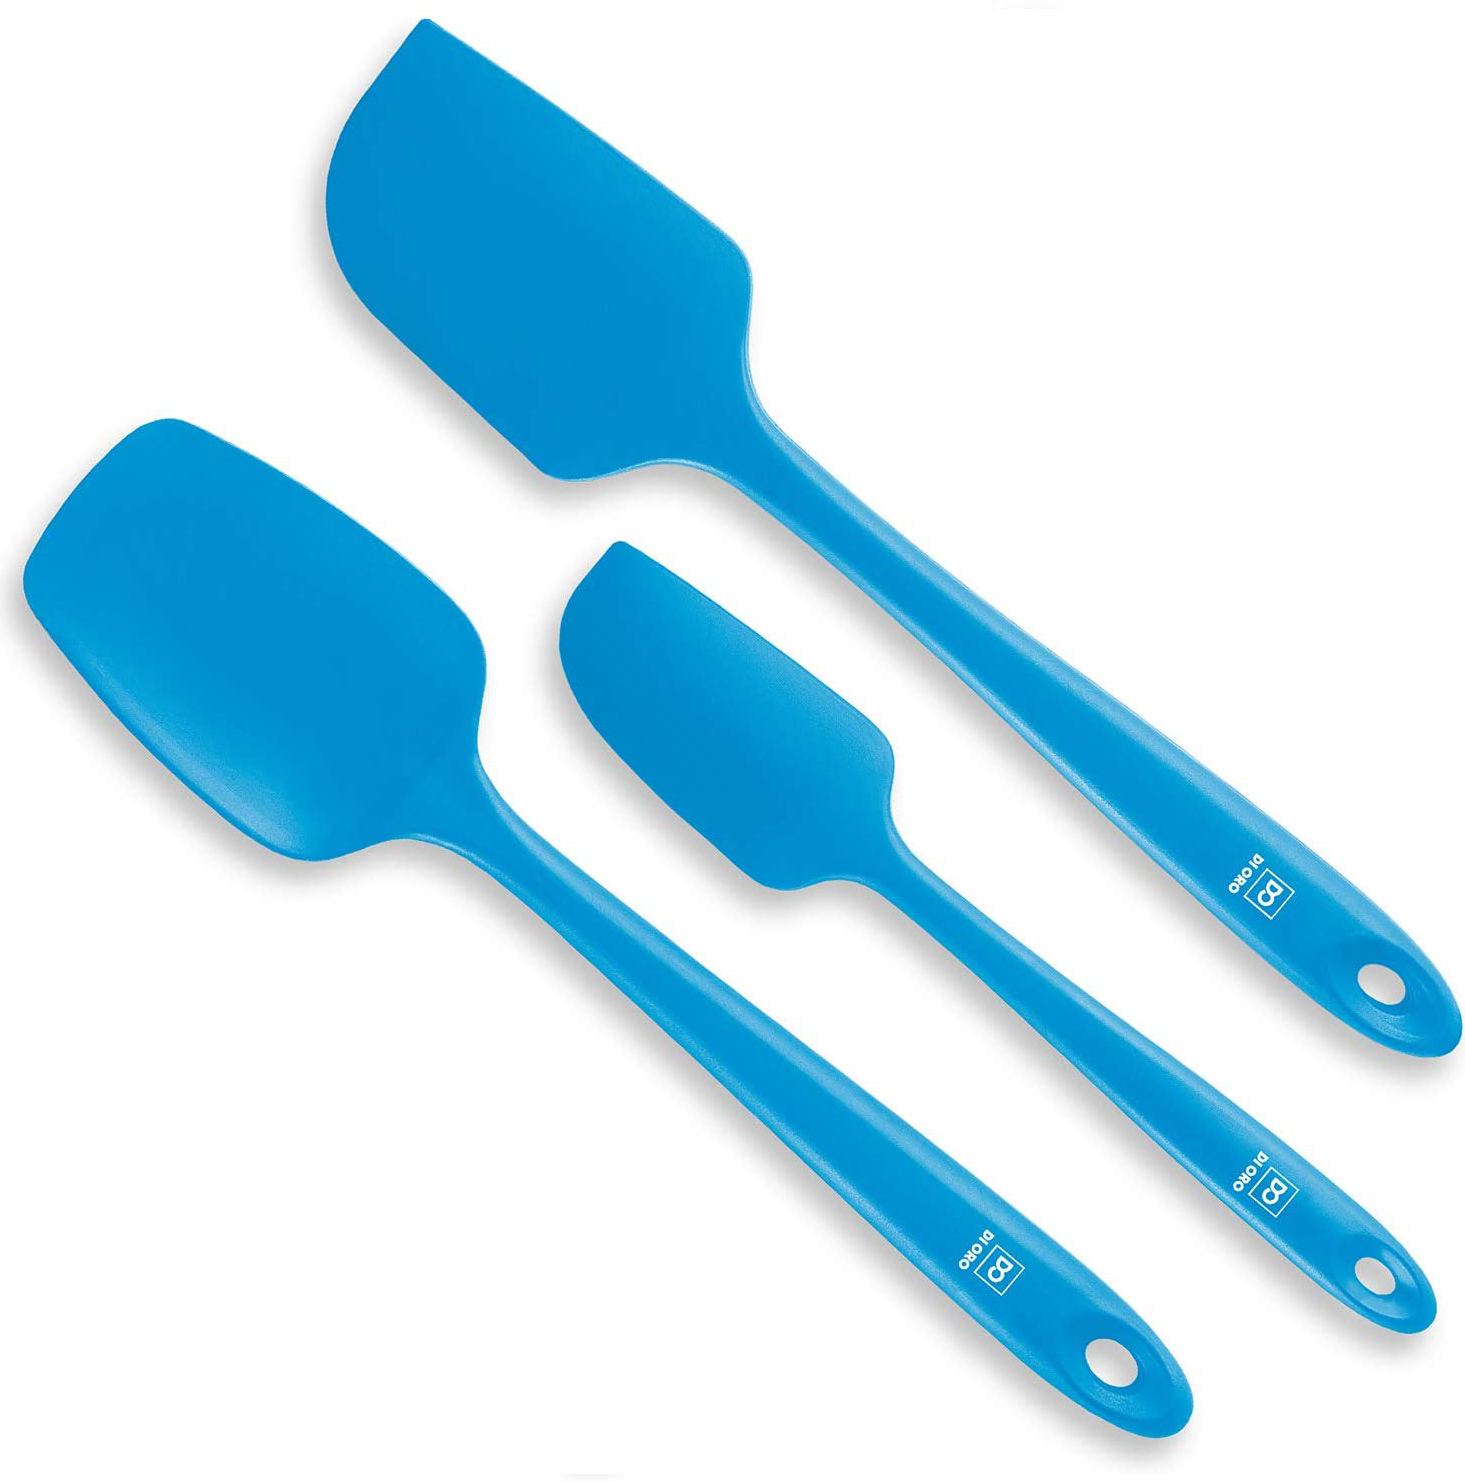 Di Oro 3 piece set of silicone spatulas